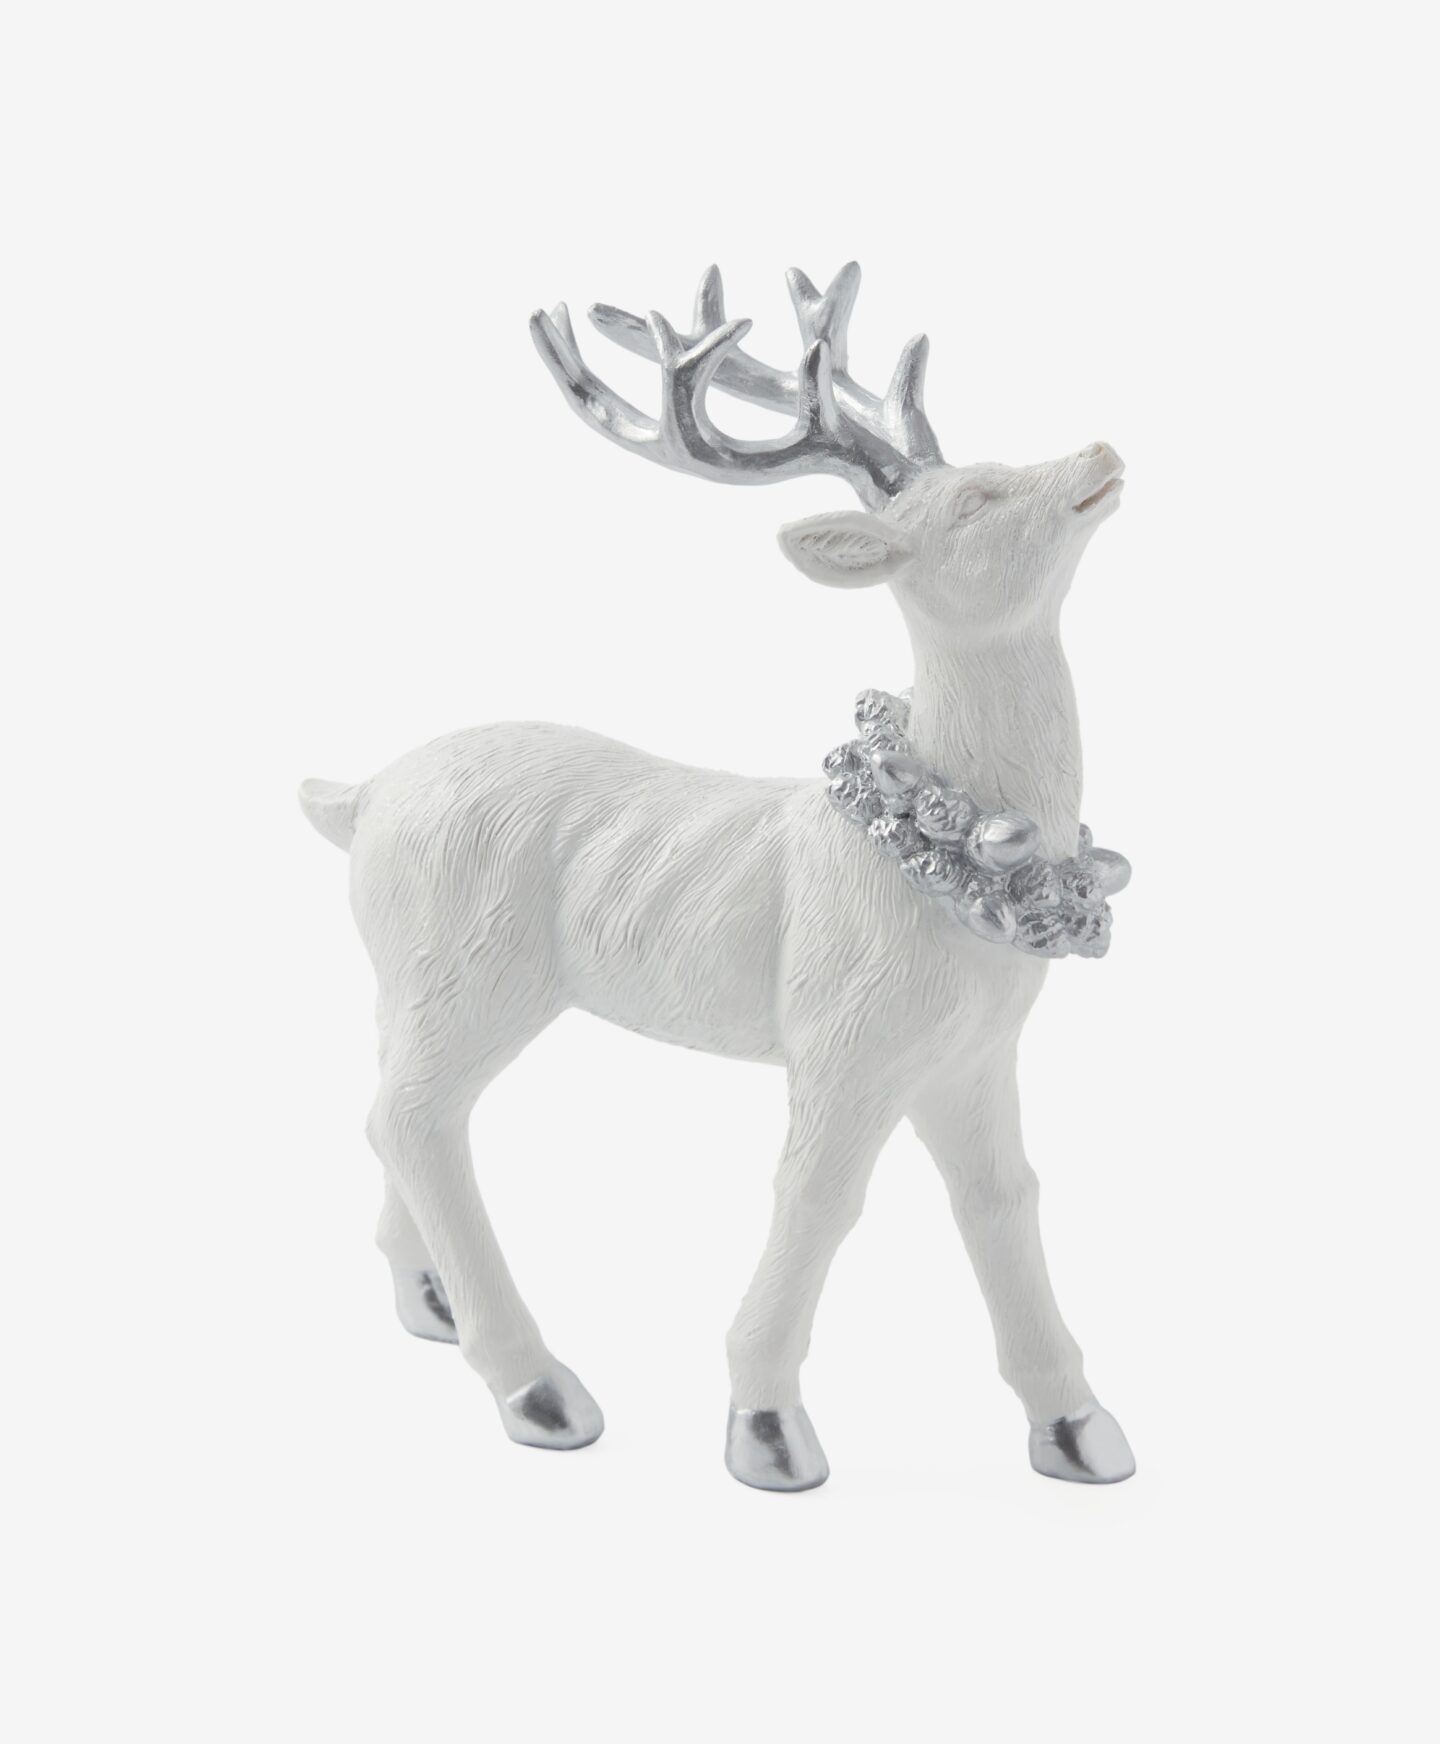 Figurină decorativă în formă de ren, albă, care are coarne mari, culoare: alb